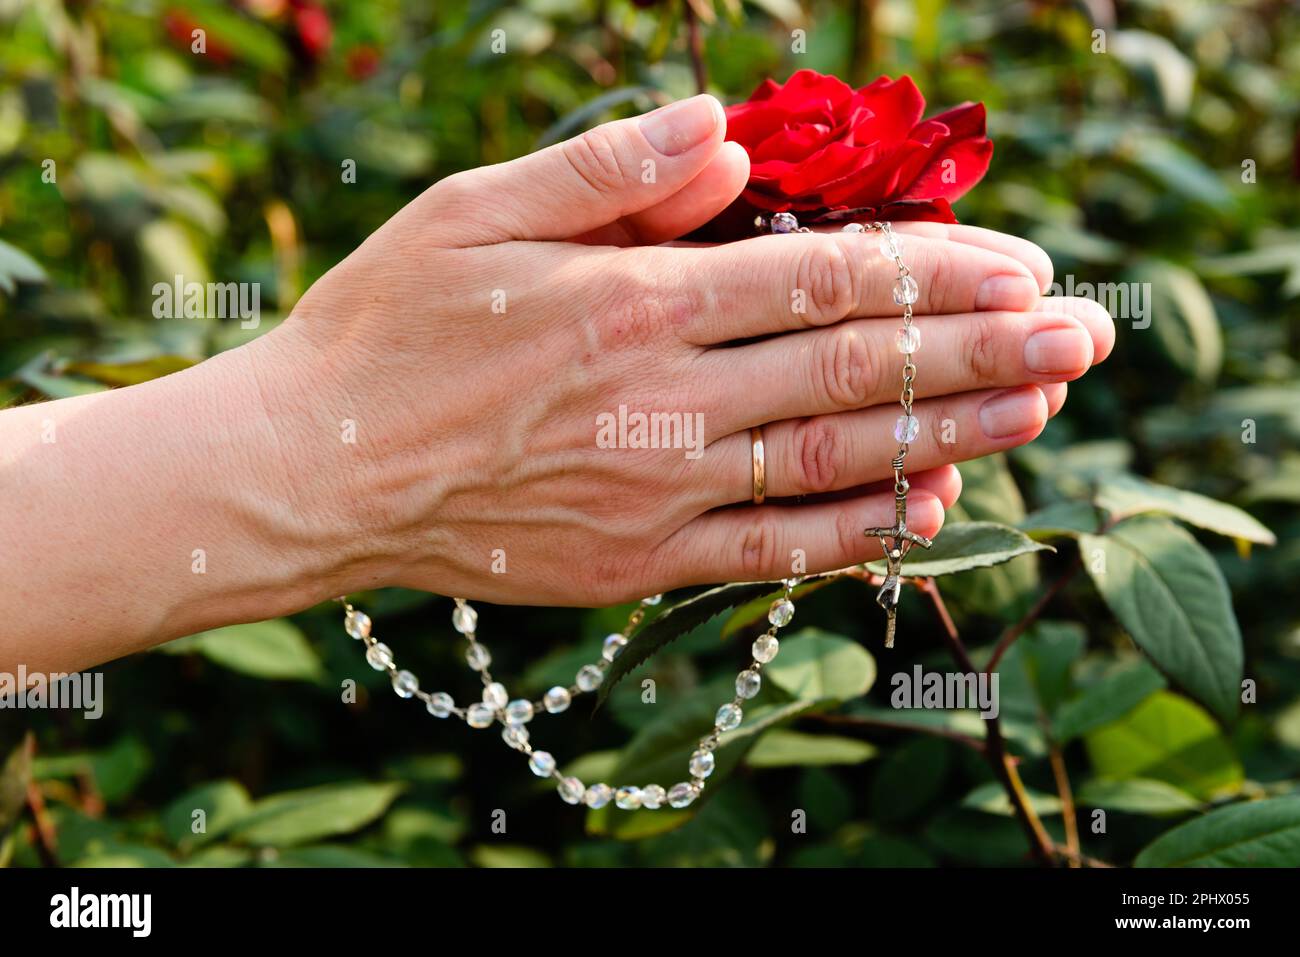 Mains avec un rosaire d'une femme mariée priante sur un fond de verdure luxuriante et une rose rouge sur un jour ensoleillé. Banque D'Images